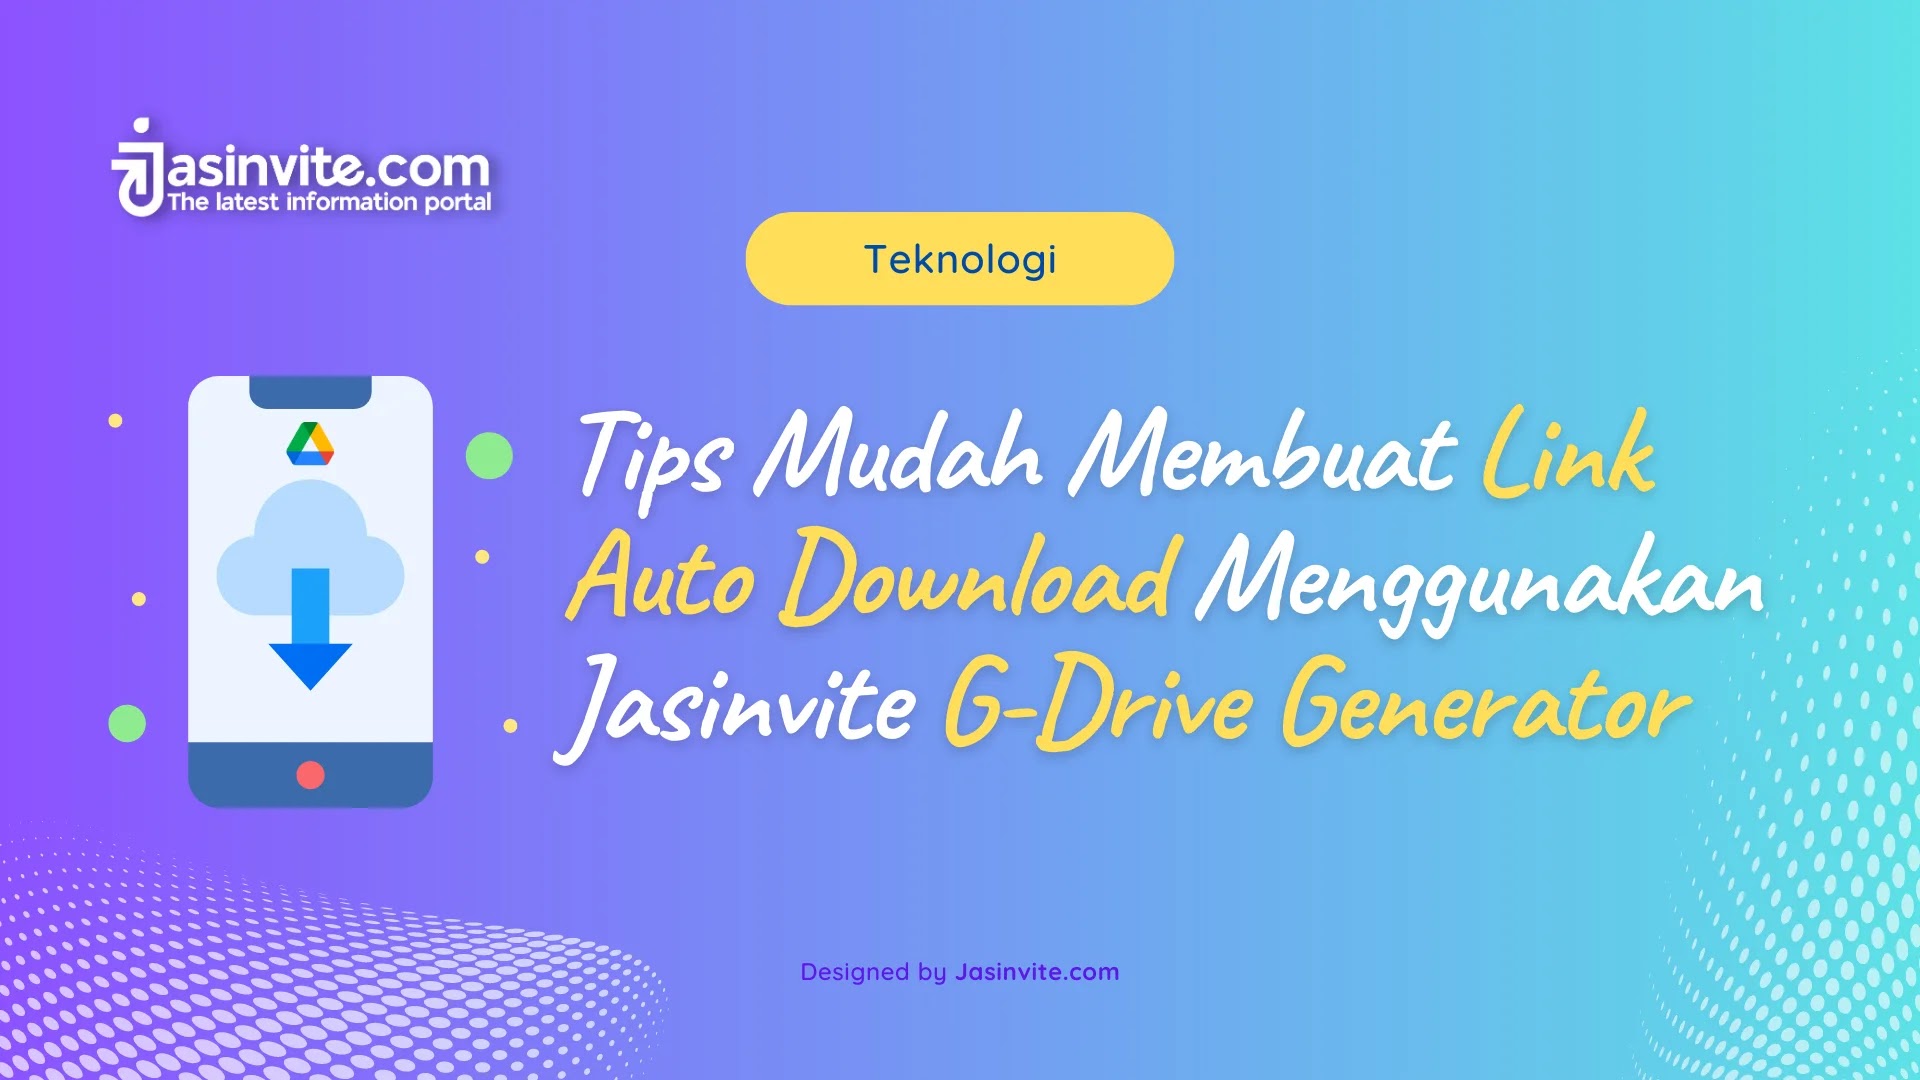 Jasinvite.com - Tips Mudah Membuat Link Auto Download Menggunakan Jasinvite G-Drive Generator